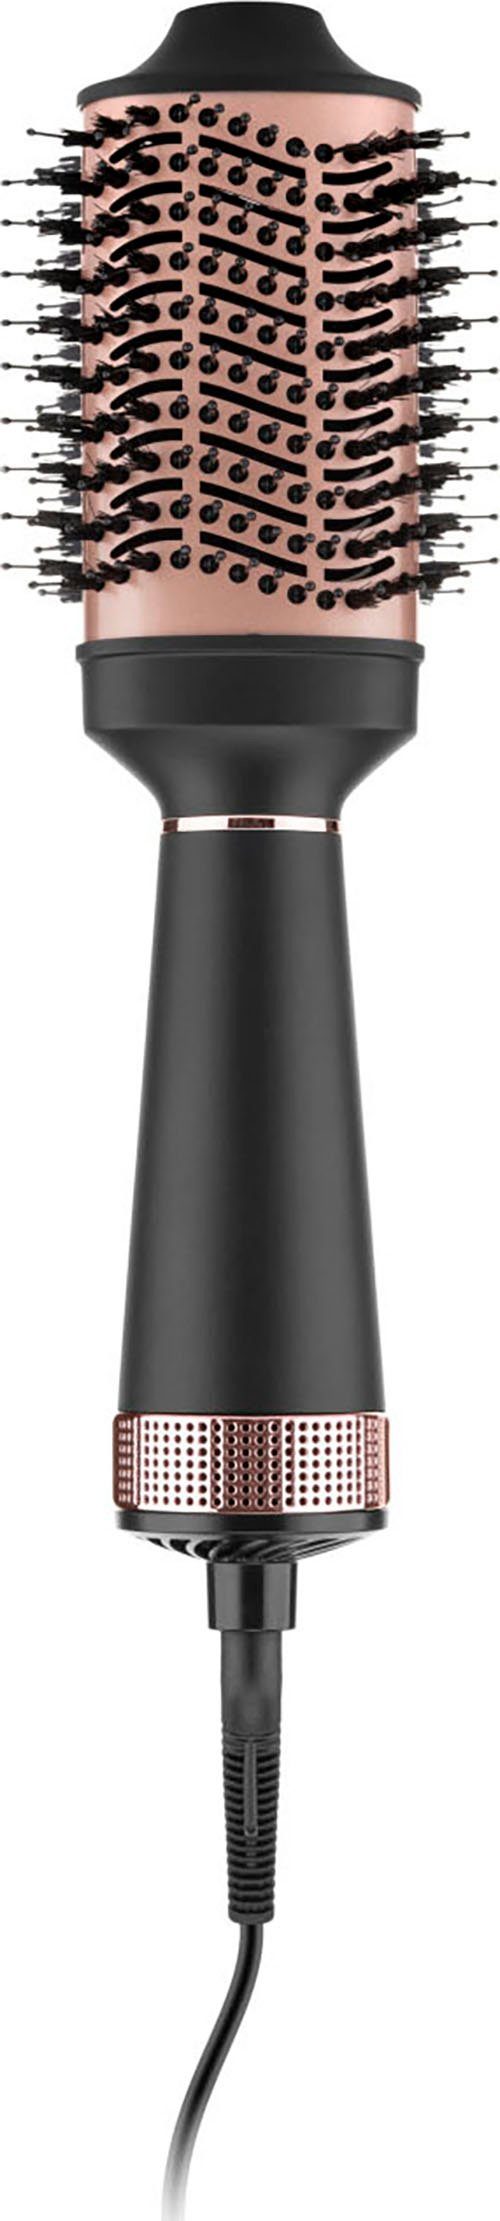 eta Warmluftbürste Fenite Black und sichere Anwendung. ETA932290000, eine für Kühle Edition einfache Spitze